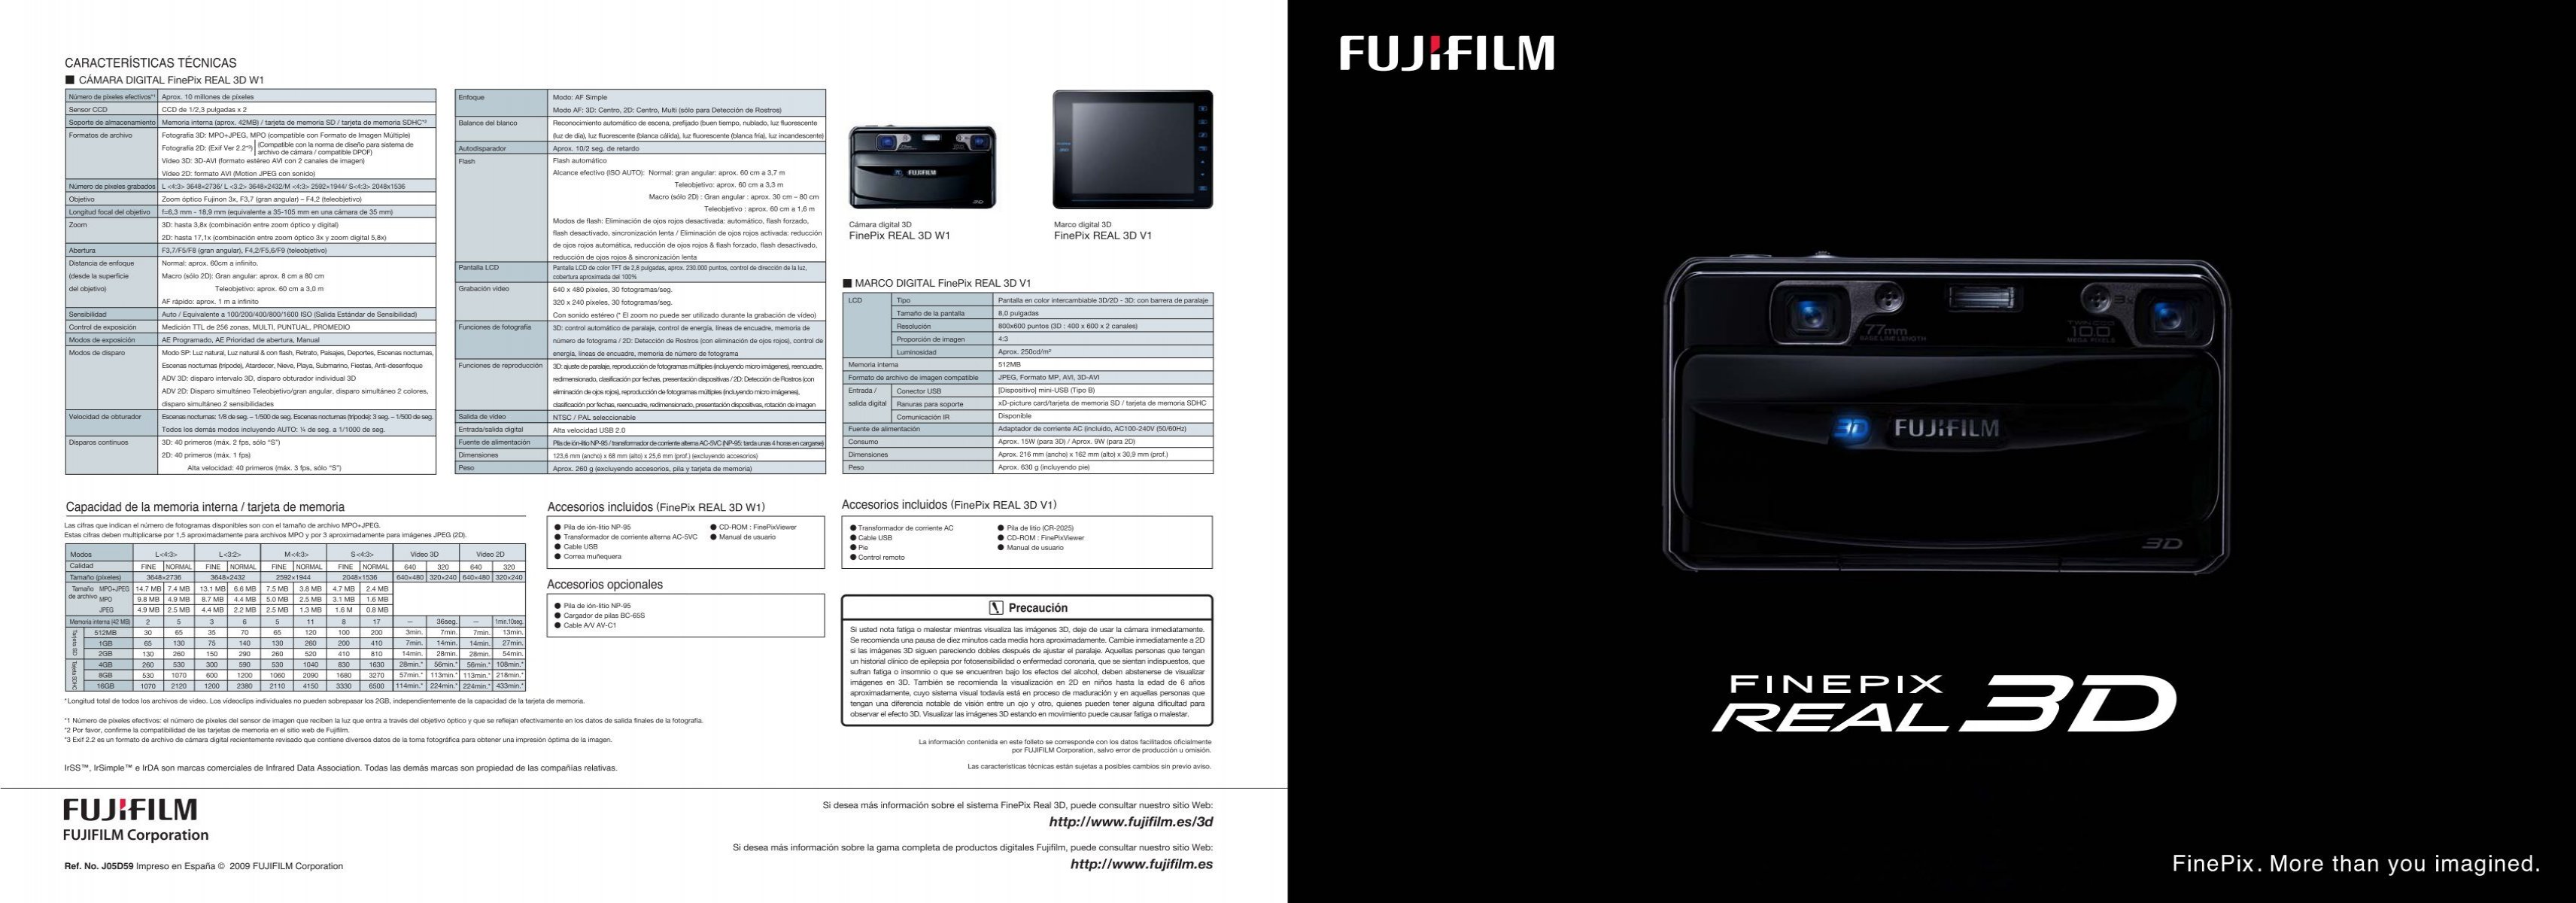 3633339 Câmera Fujifilm X-t2: Ficha Técnica, Onde Comprar, Preço E Principais Informações